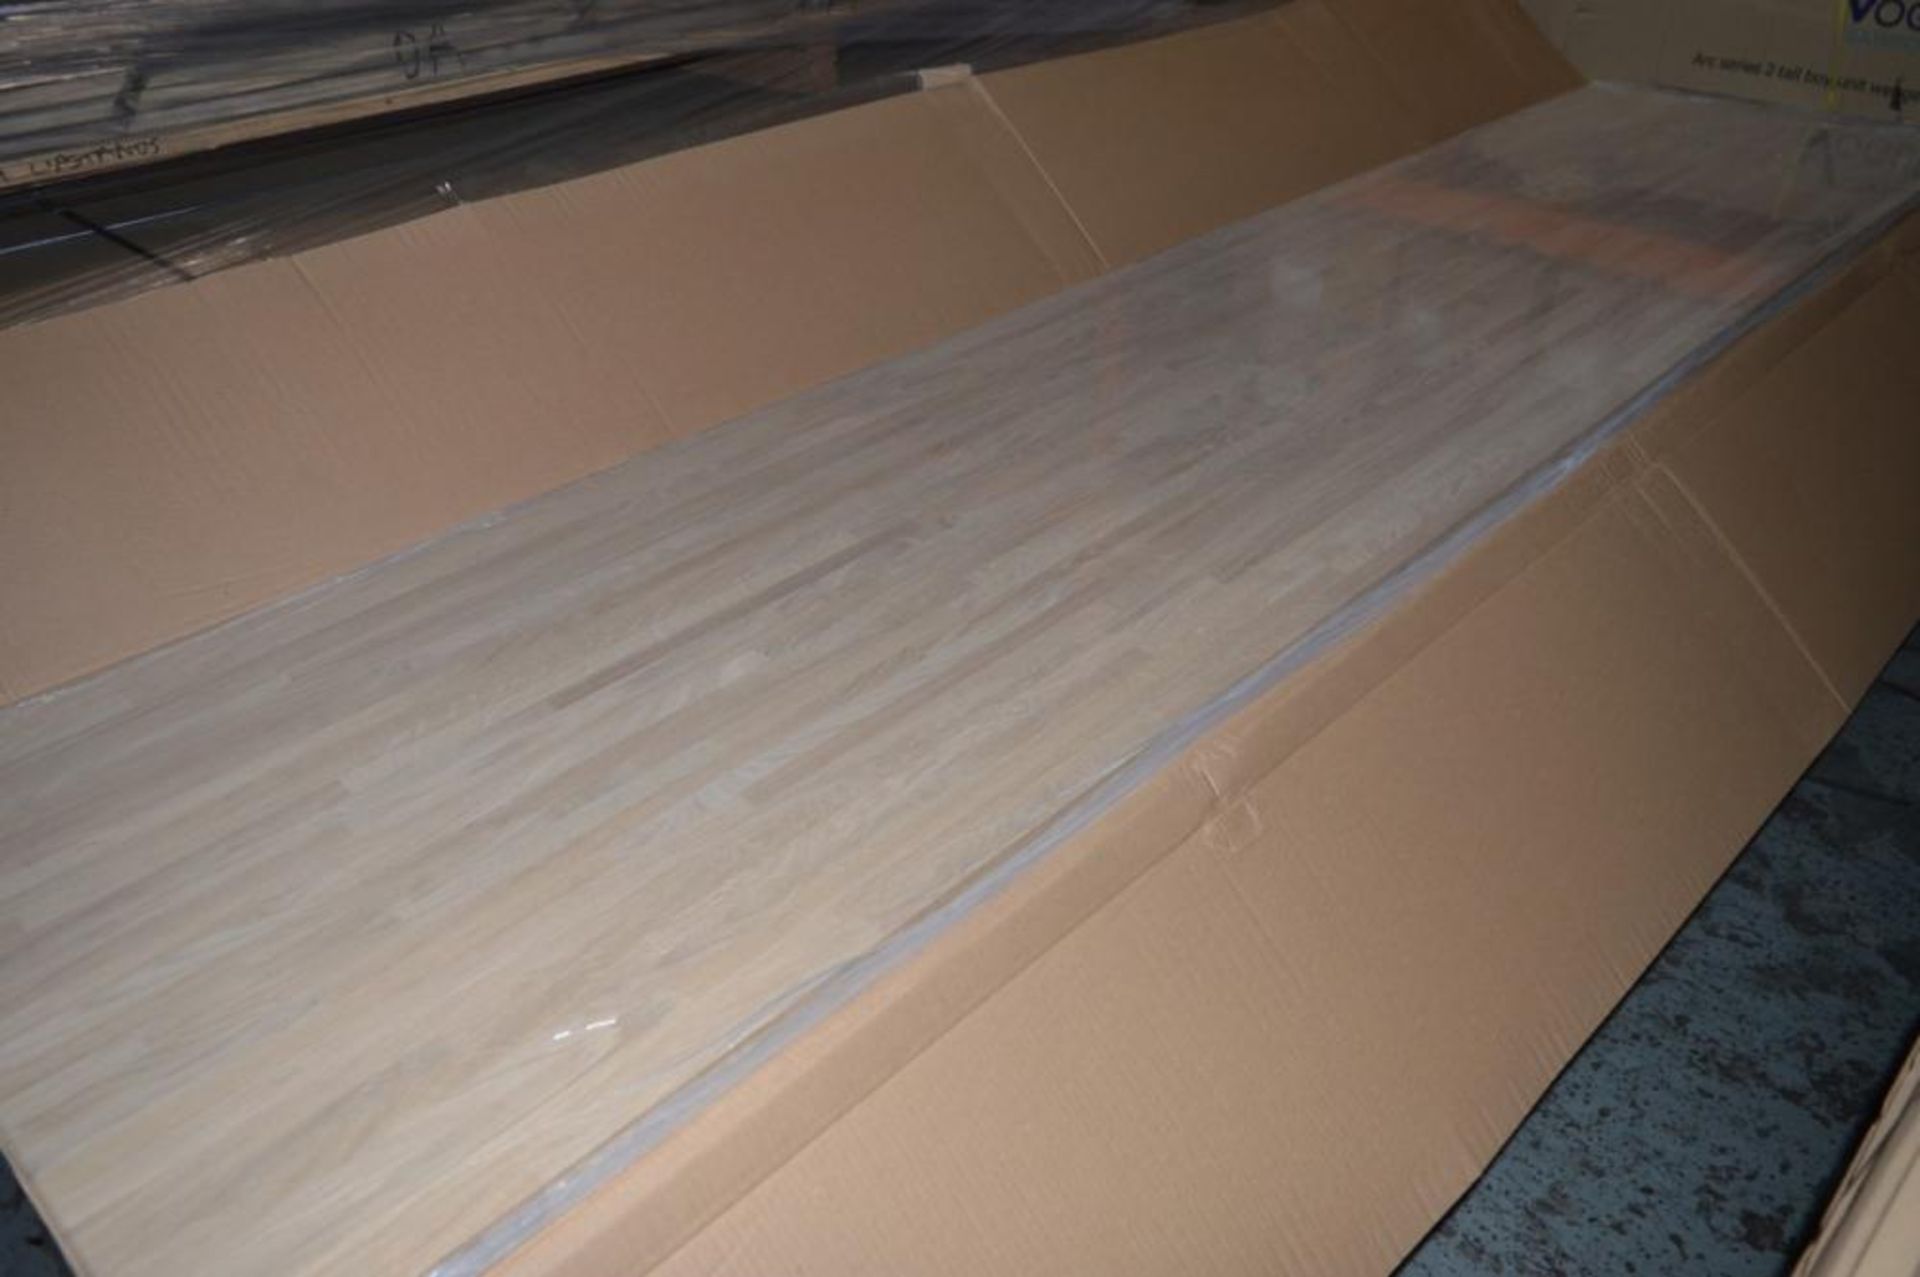 1 x Solid Wood Kitchen Worktop - OAK - Oak Blockwood Kitchen Worktop - Size: 3000 x 900 x 32mm - Unt - Image 3 of 3